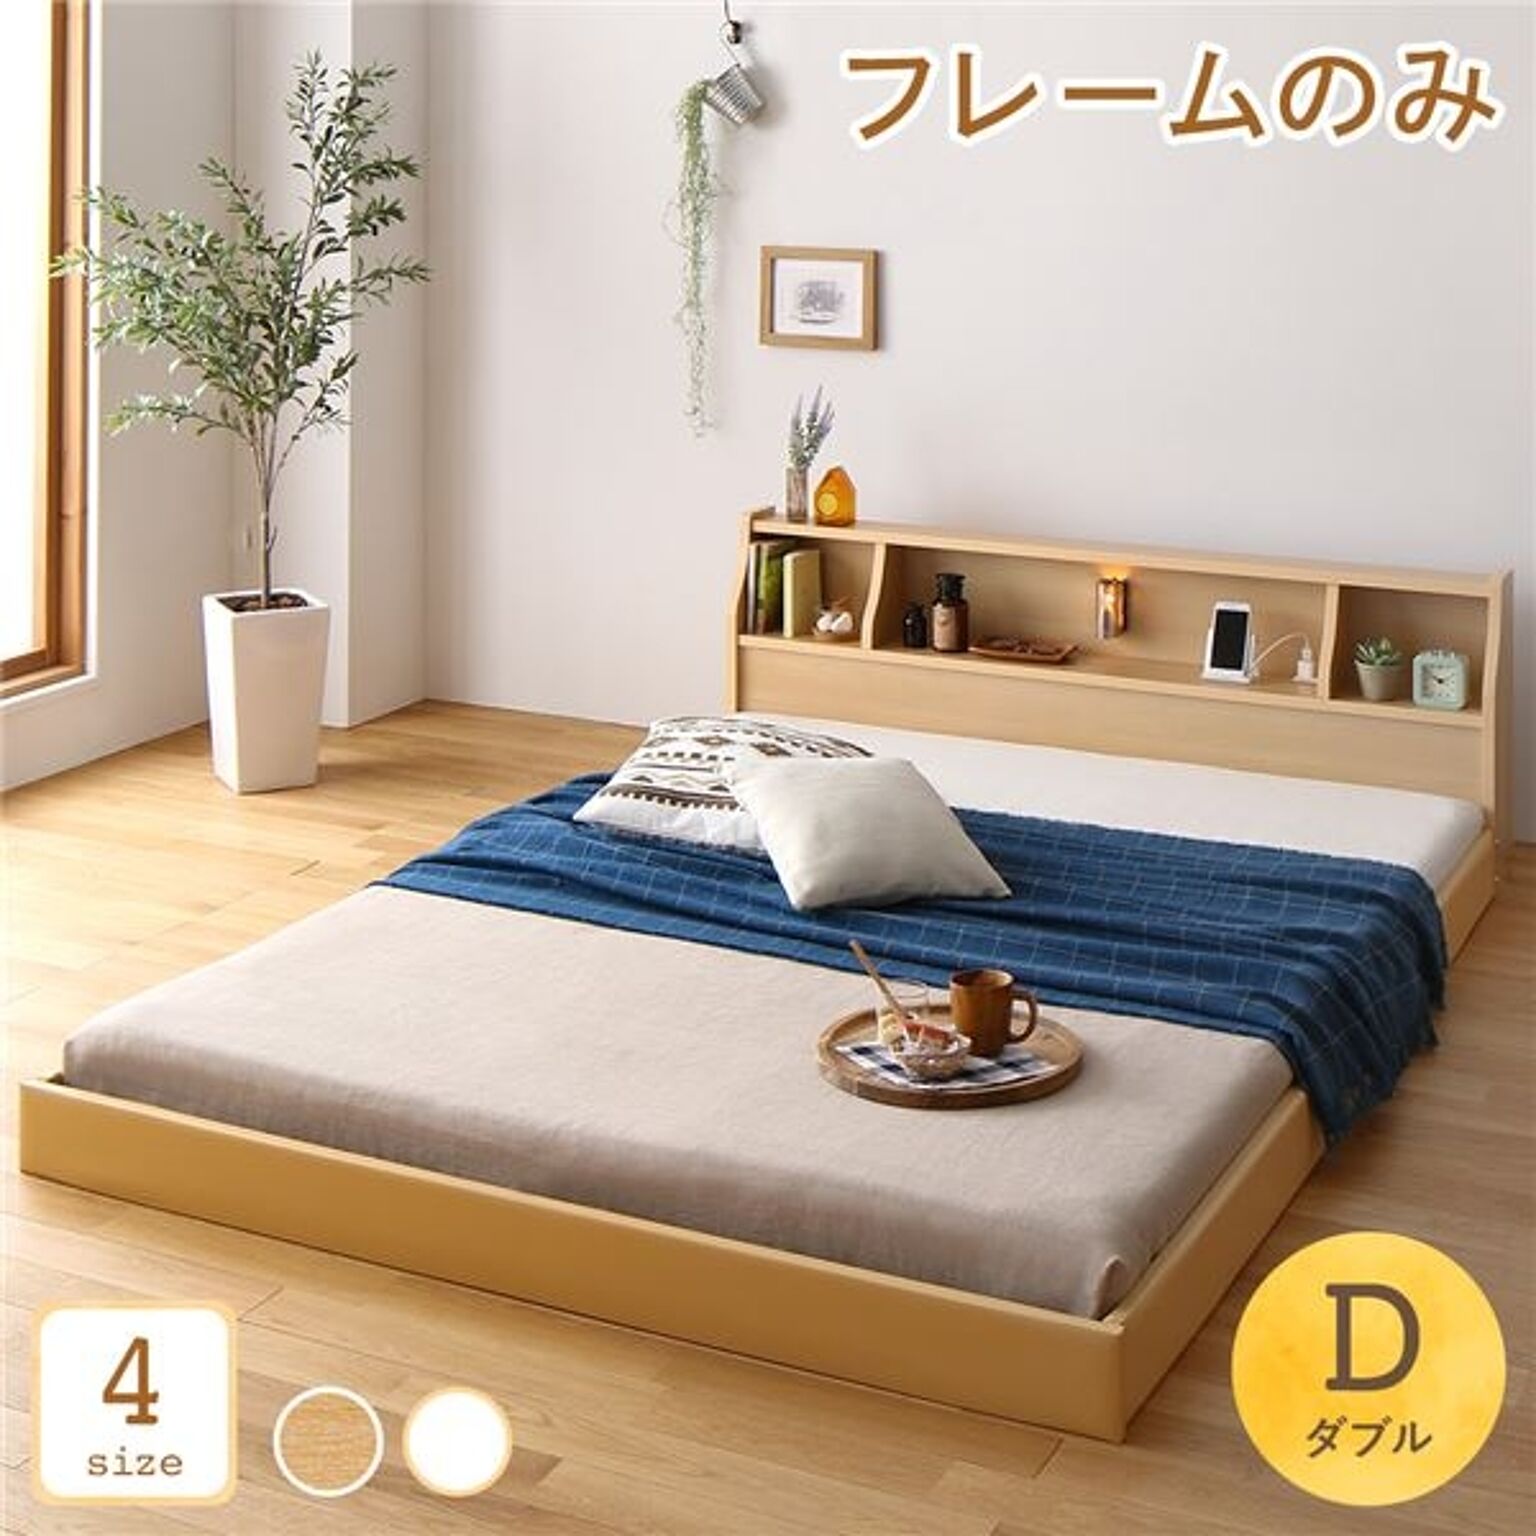 日本製 ダブルベッド ベッドフレームのみ 低床フロアロータイプ 木製